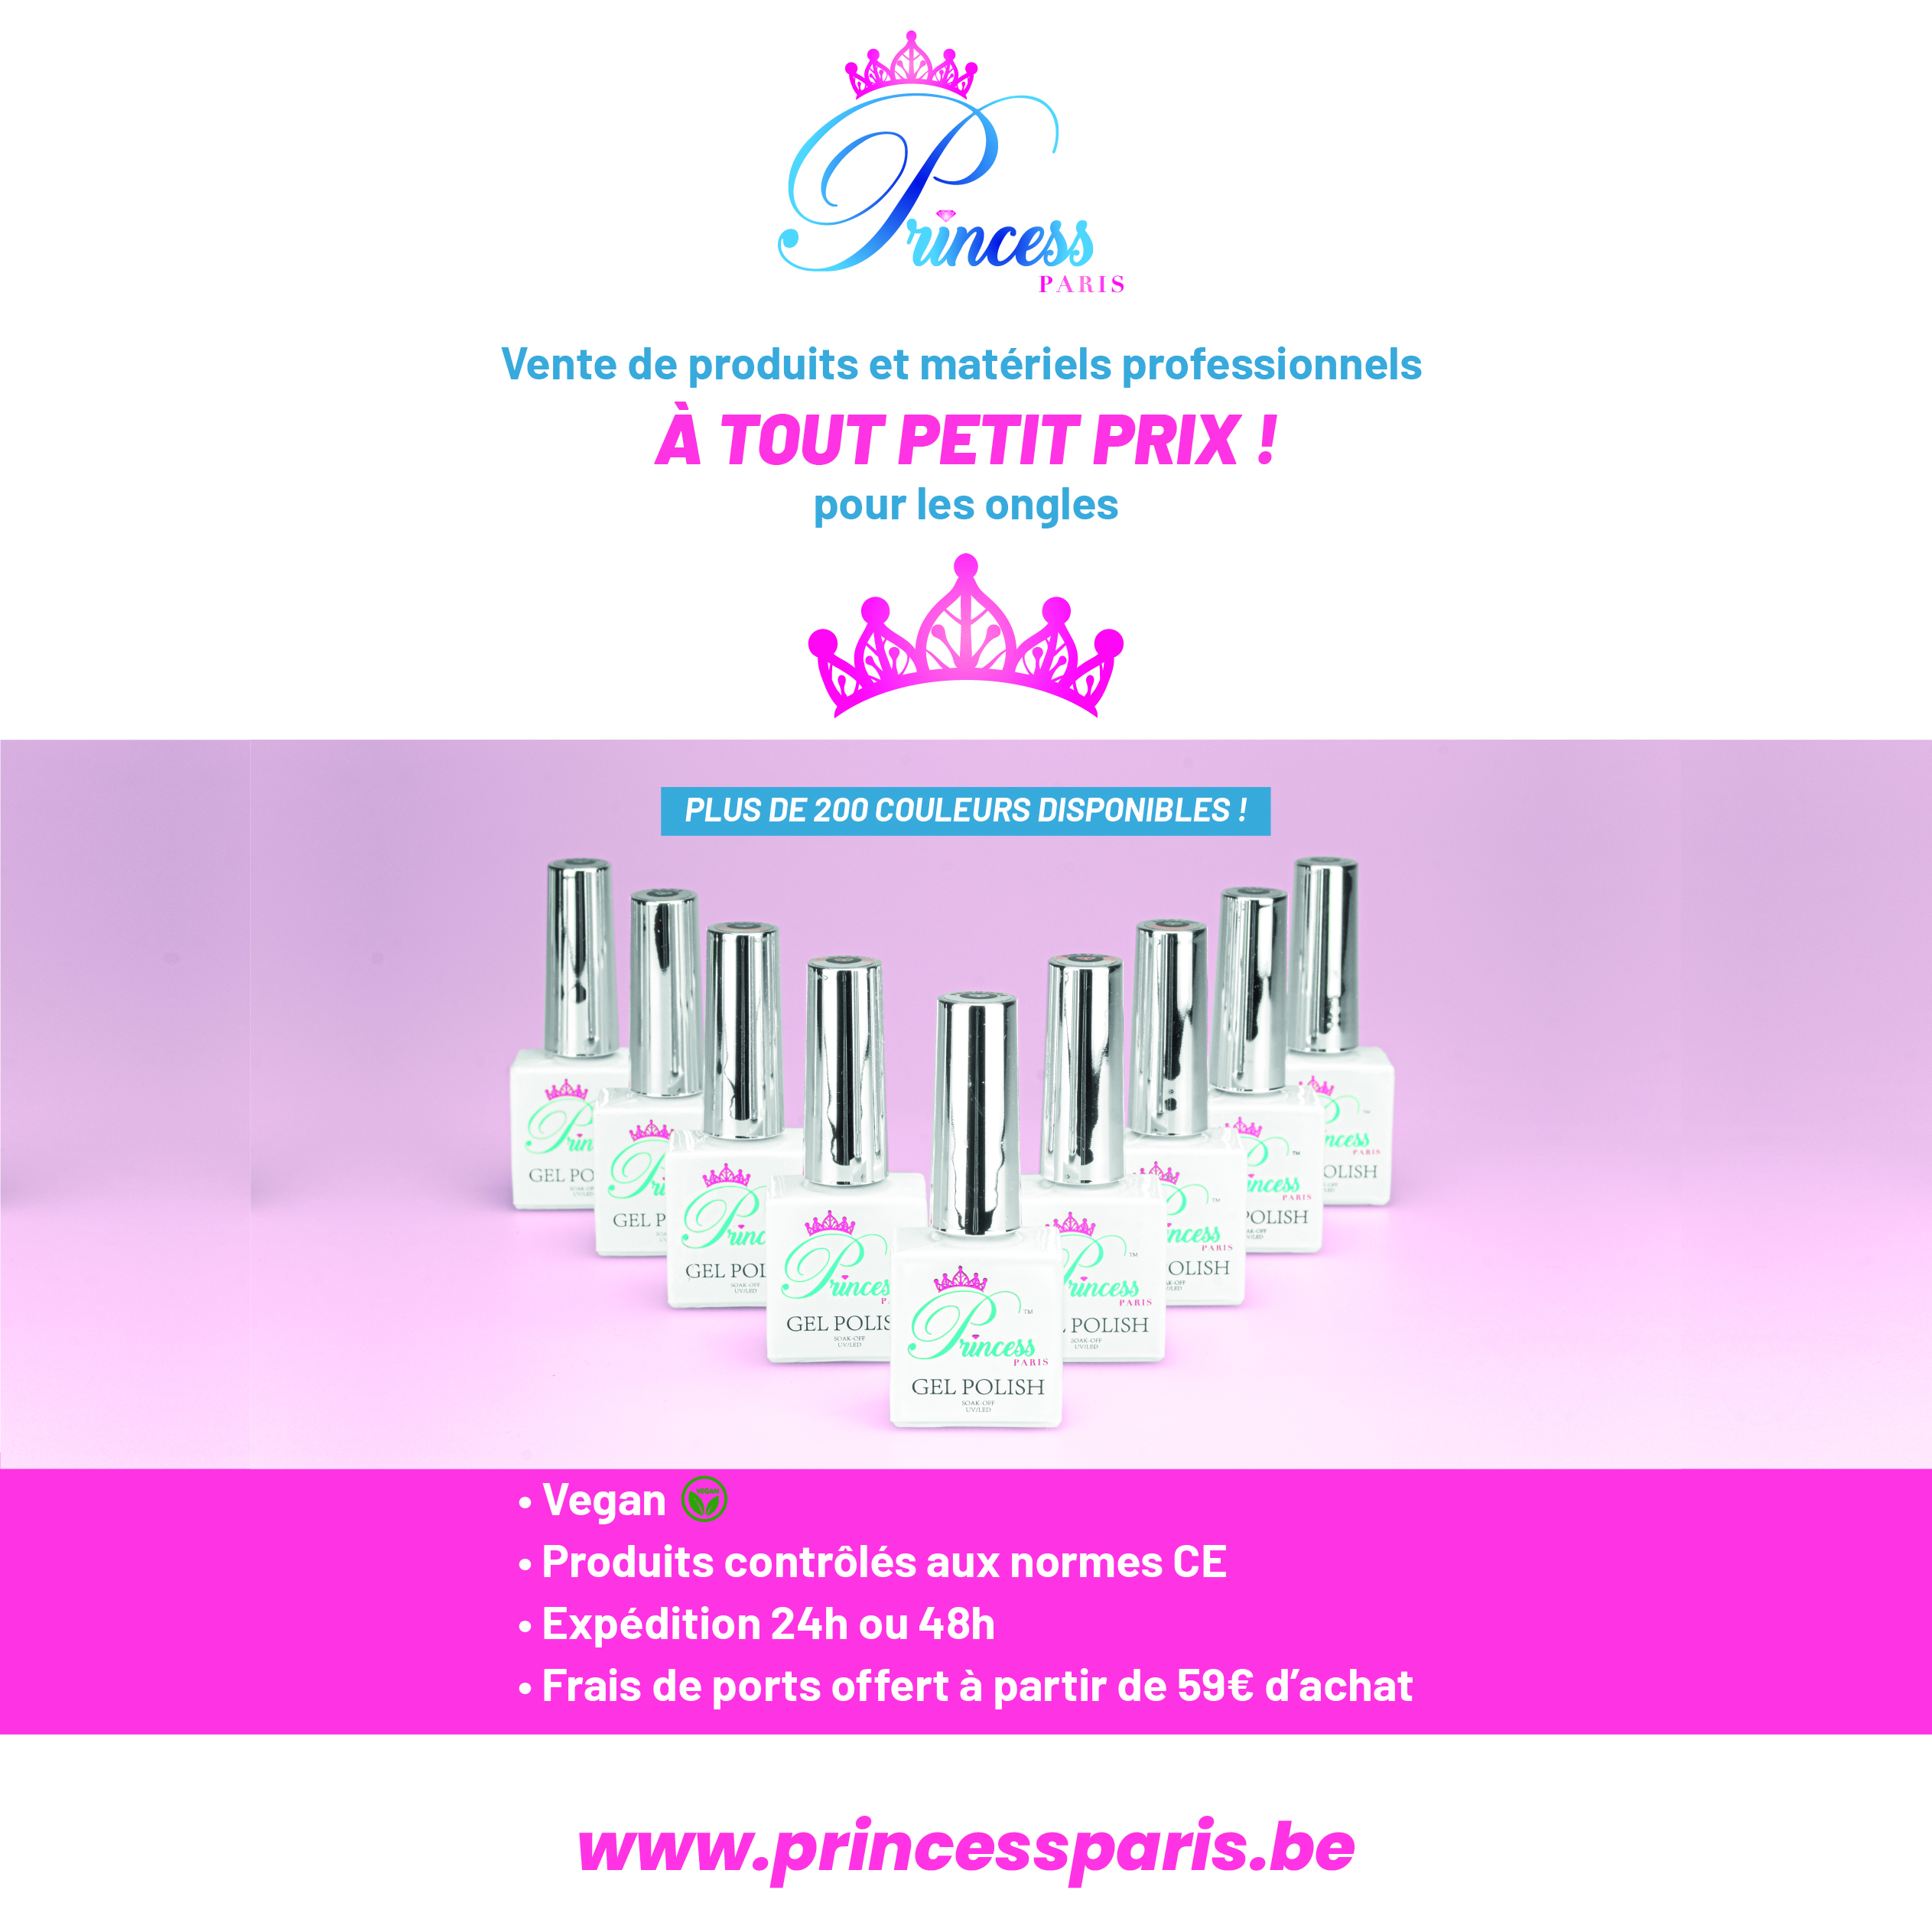 Princess Paris